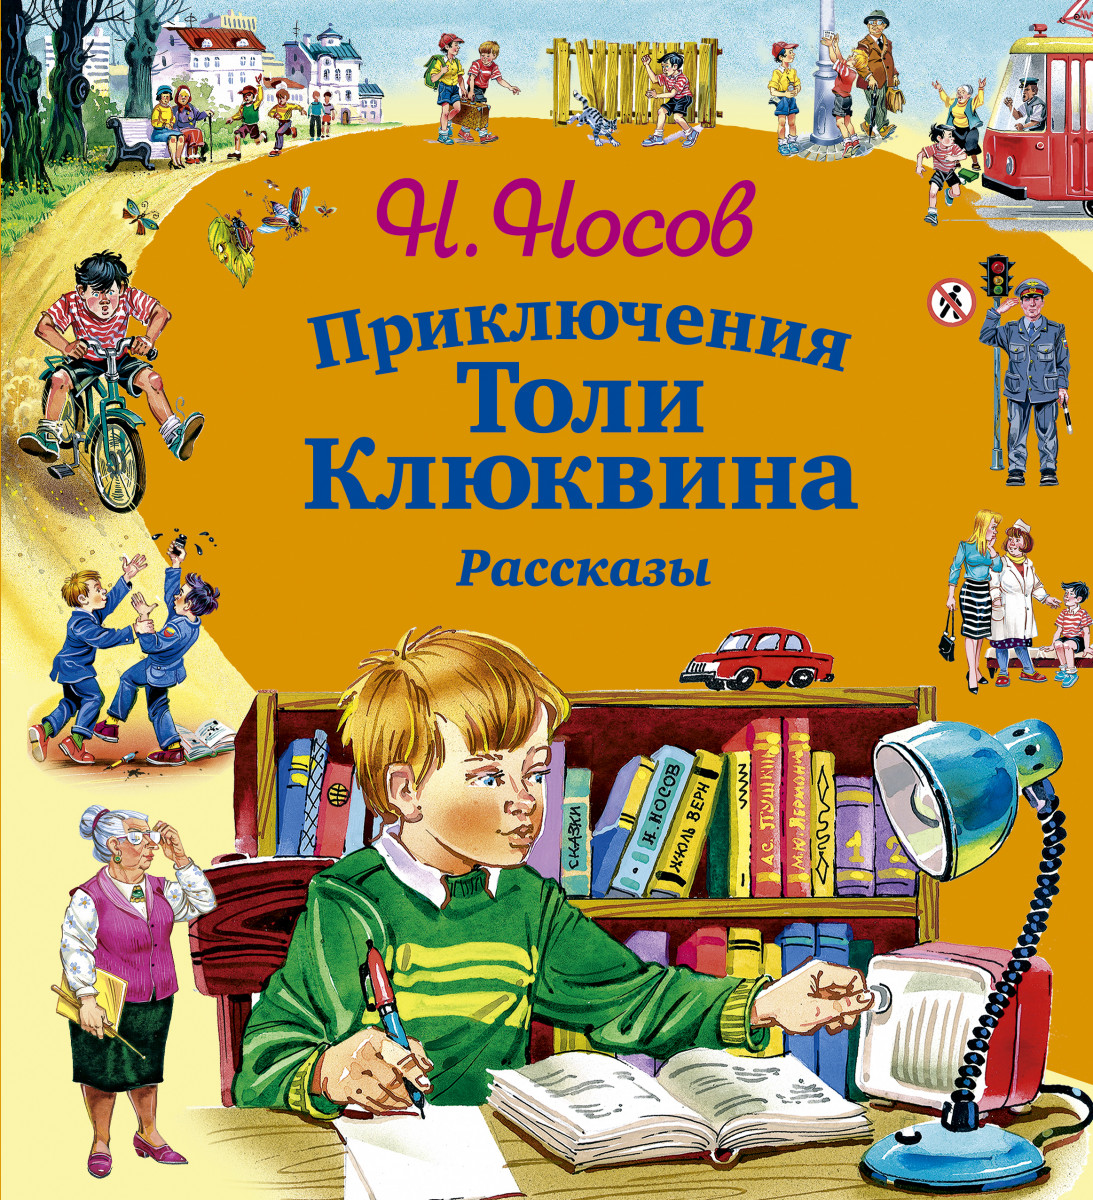 Чтение произведений о детях. Приключения толи Клюквина н.н Носов 1961. Носов приключения толи Клюквина обложка.